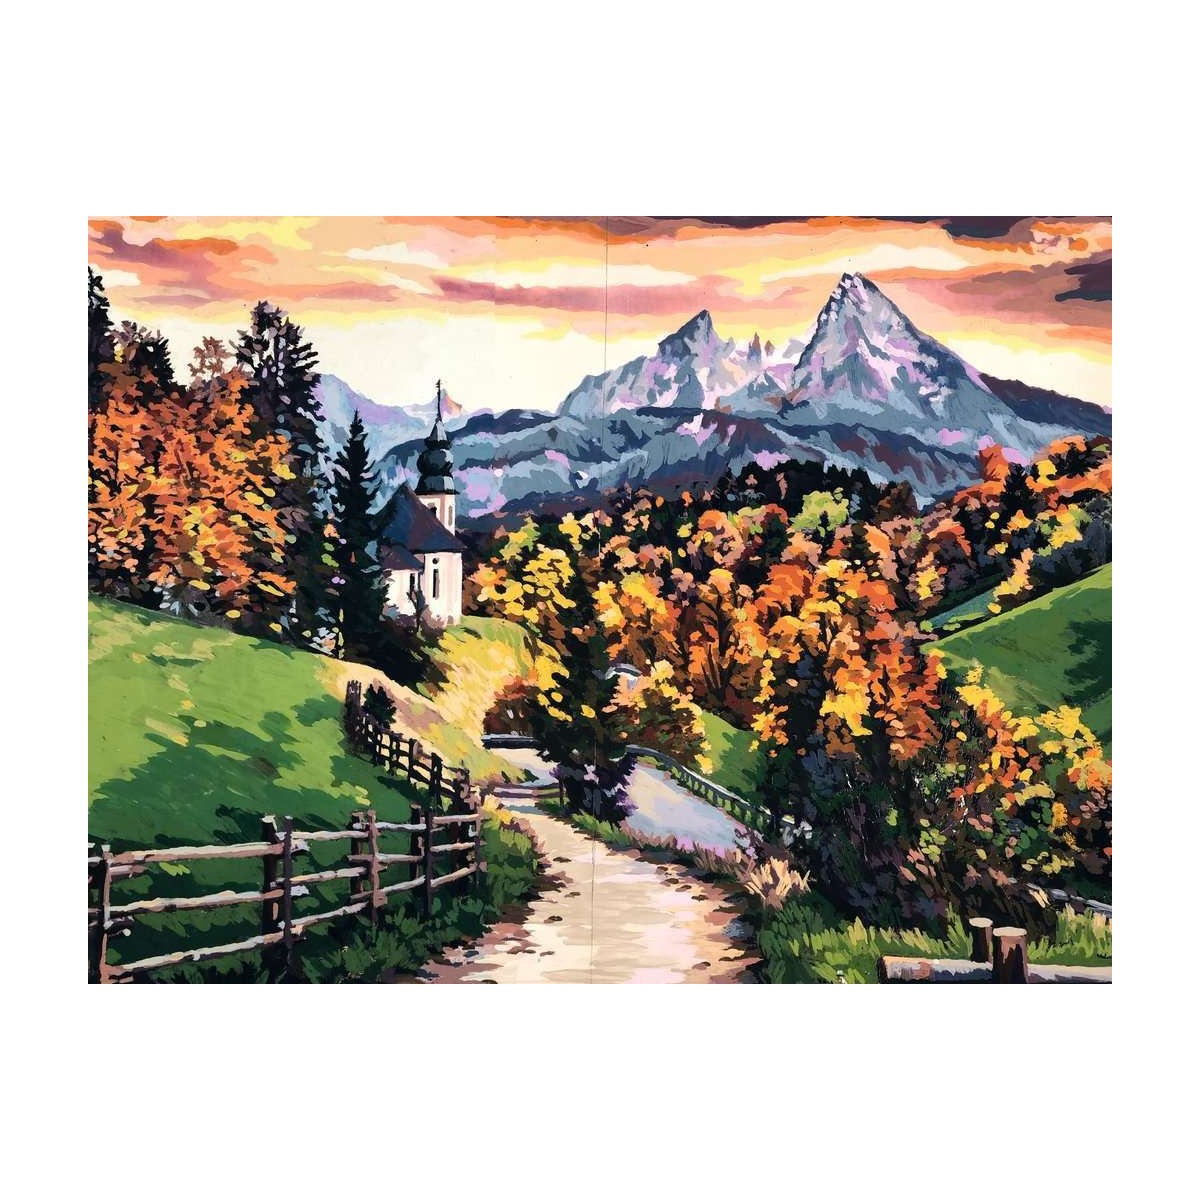 Ravensburger - Bayerische Herbstimpression